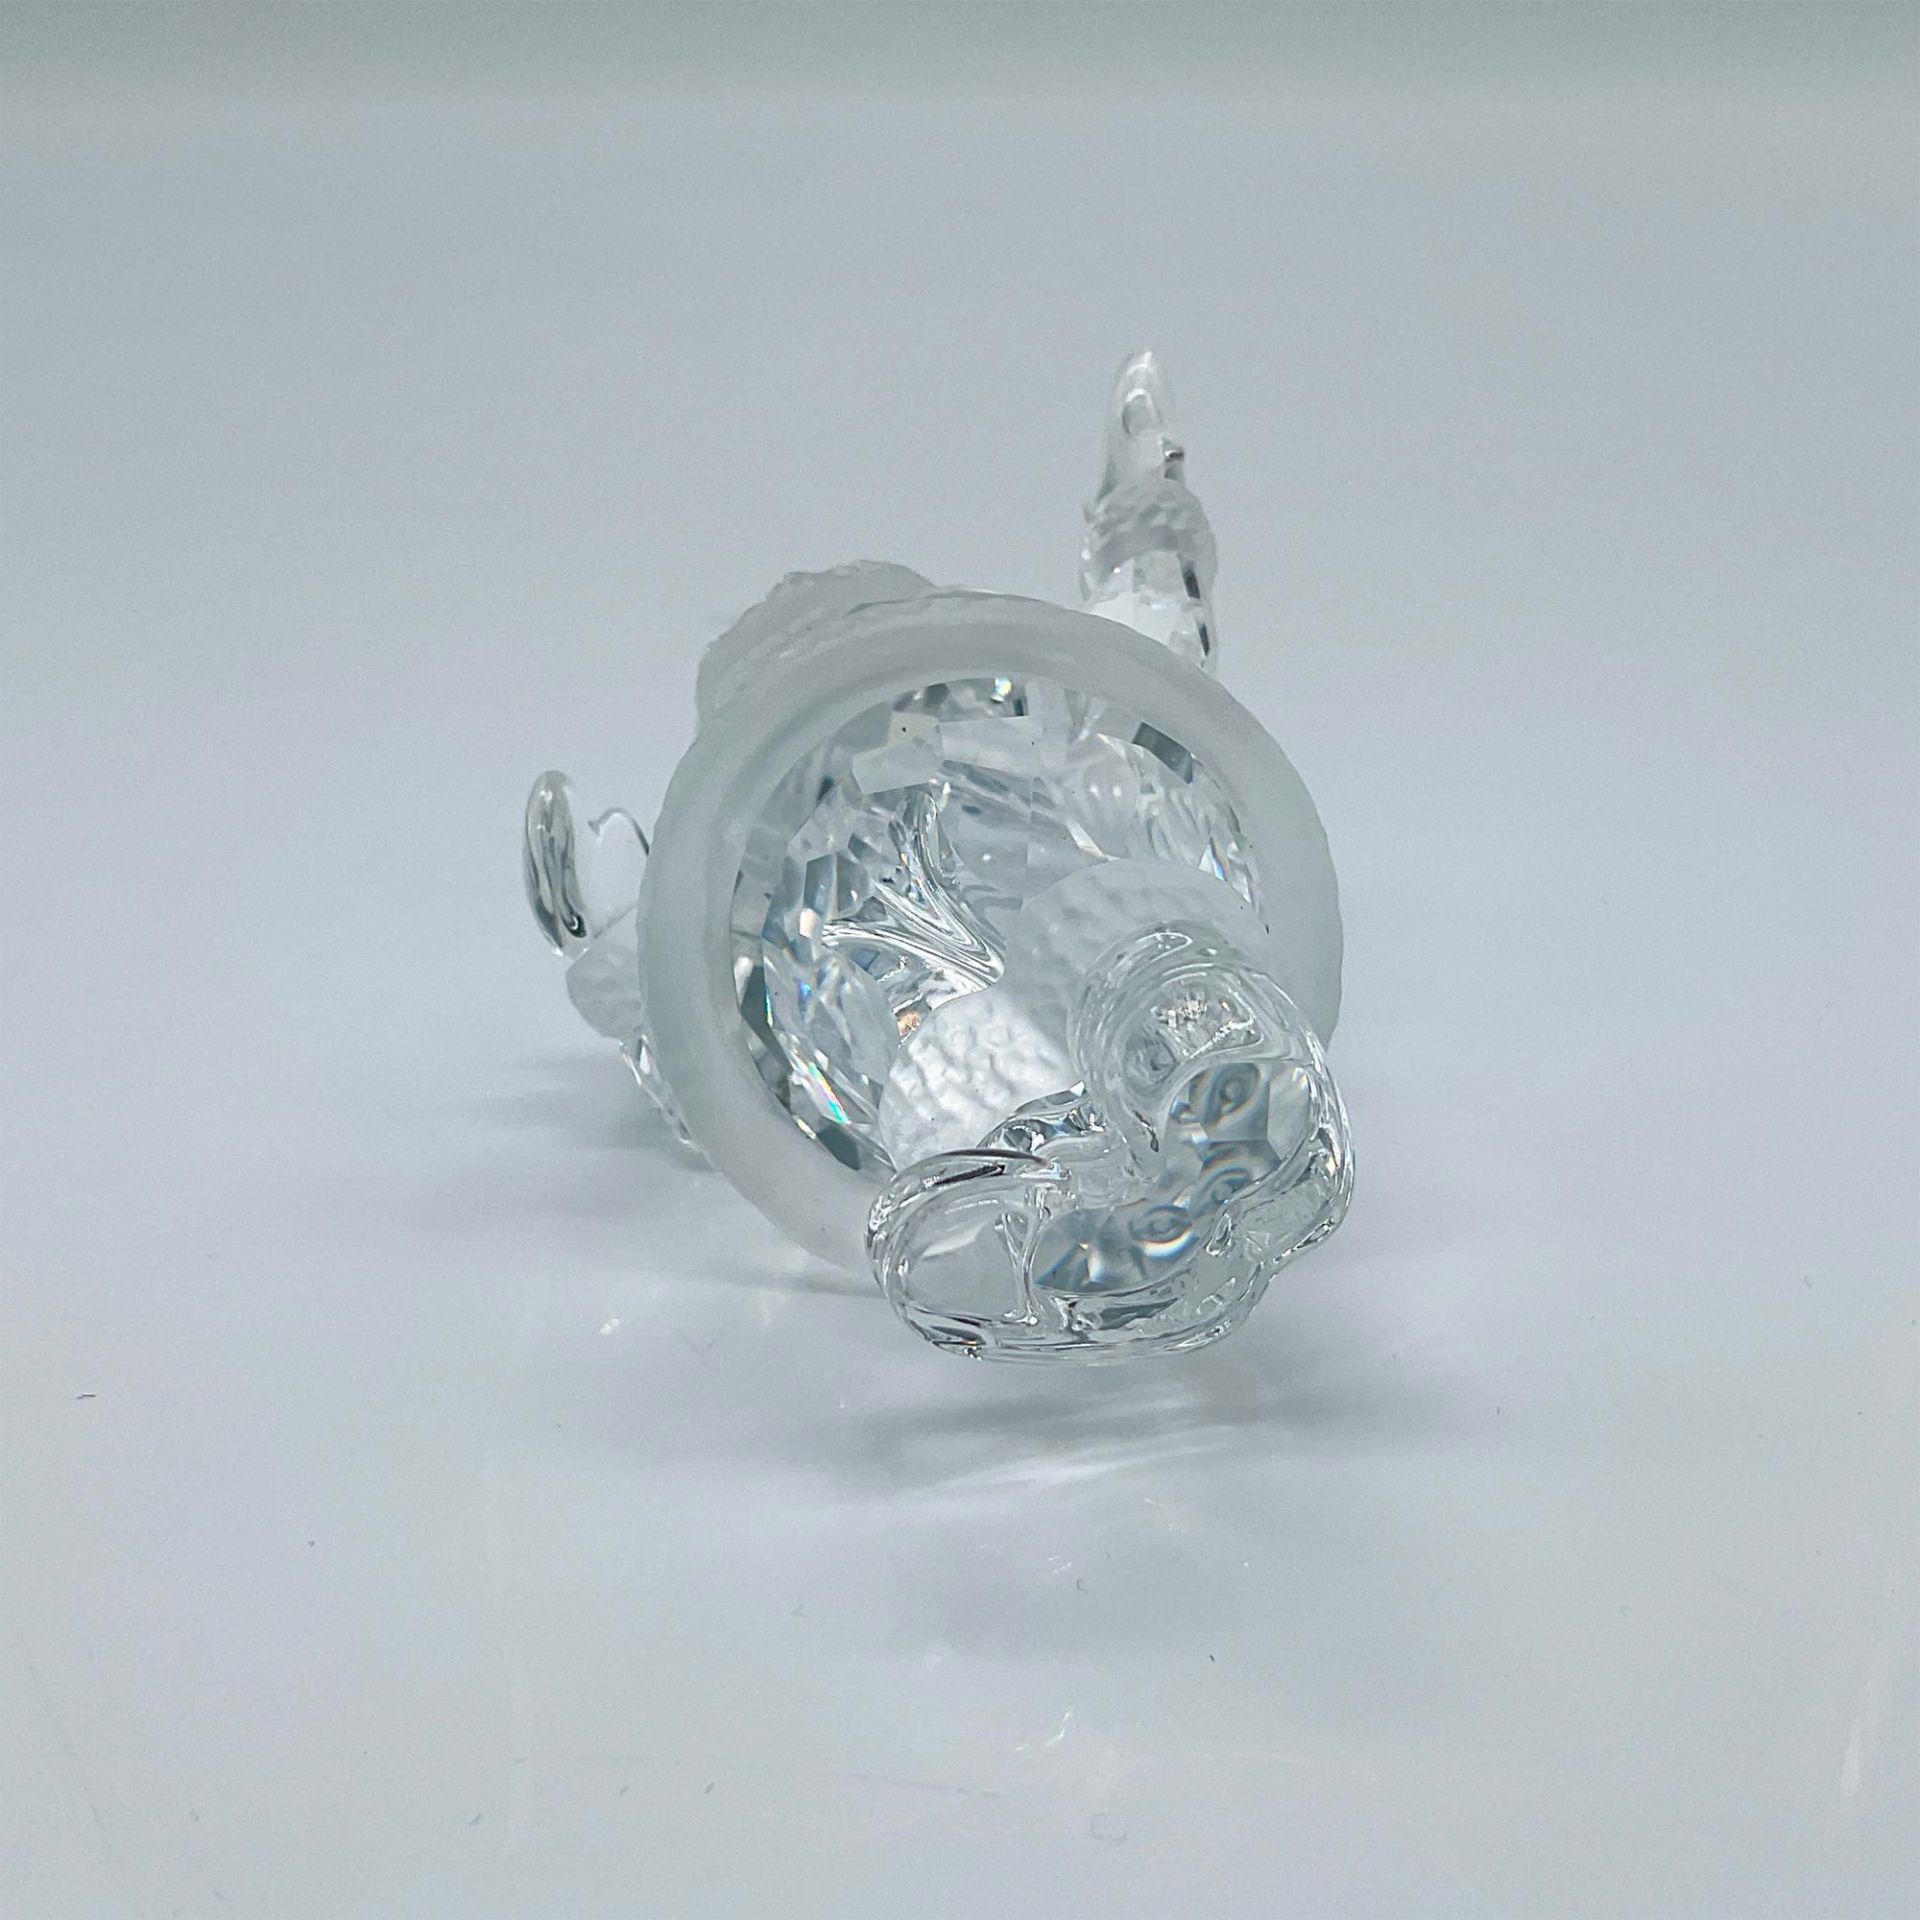 Swarovski Crystal Christmas Figurine, Santa Claus - Image 3 of 3